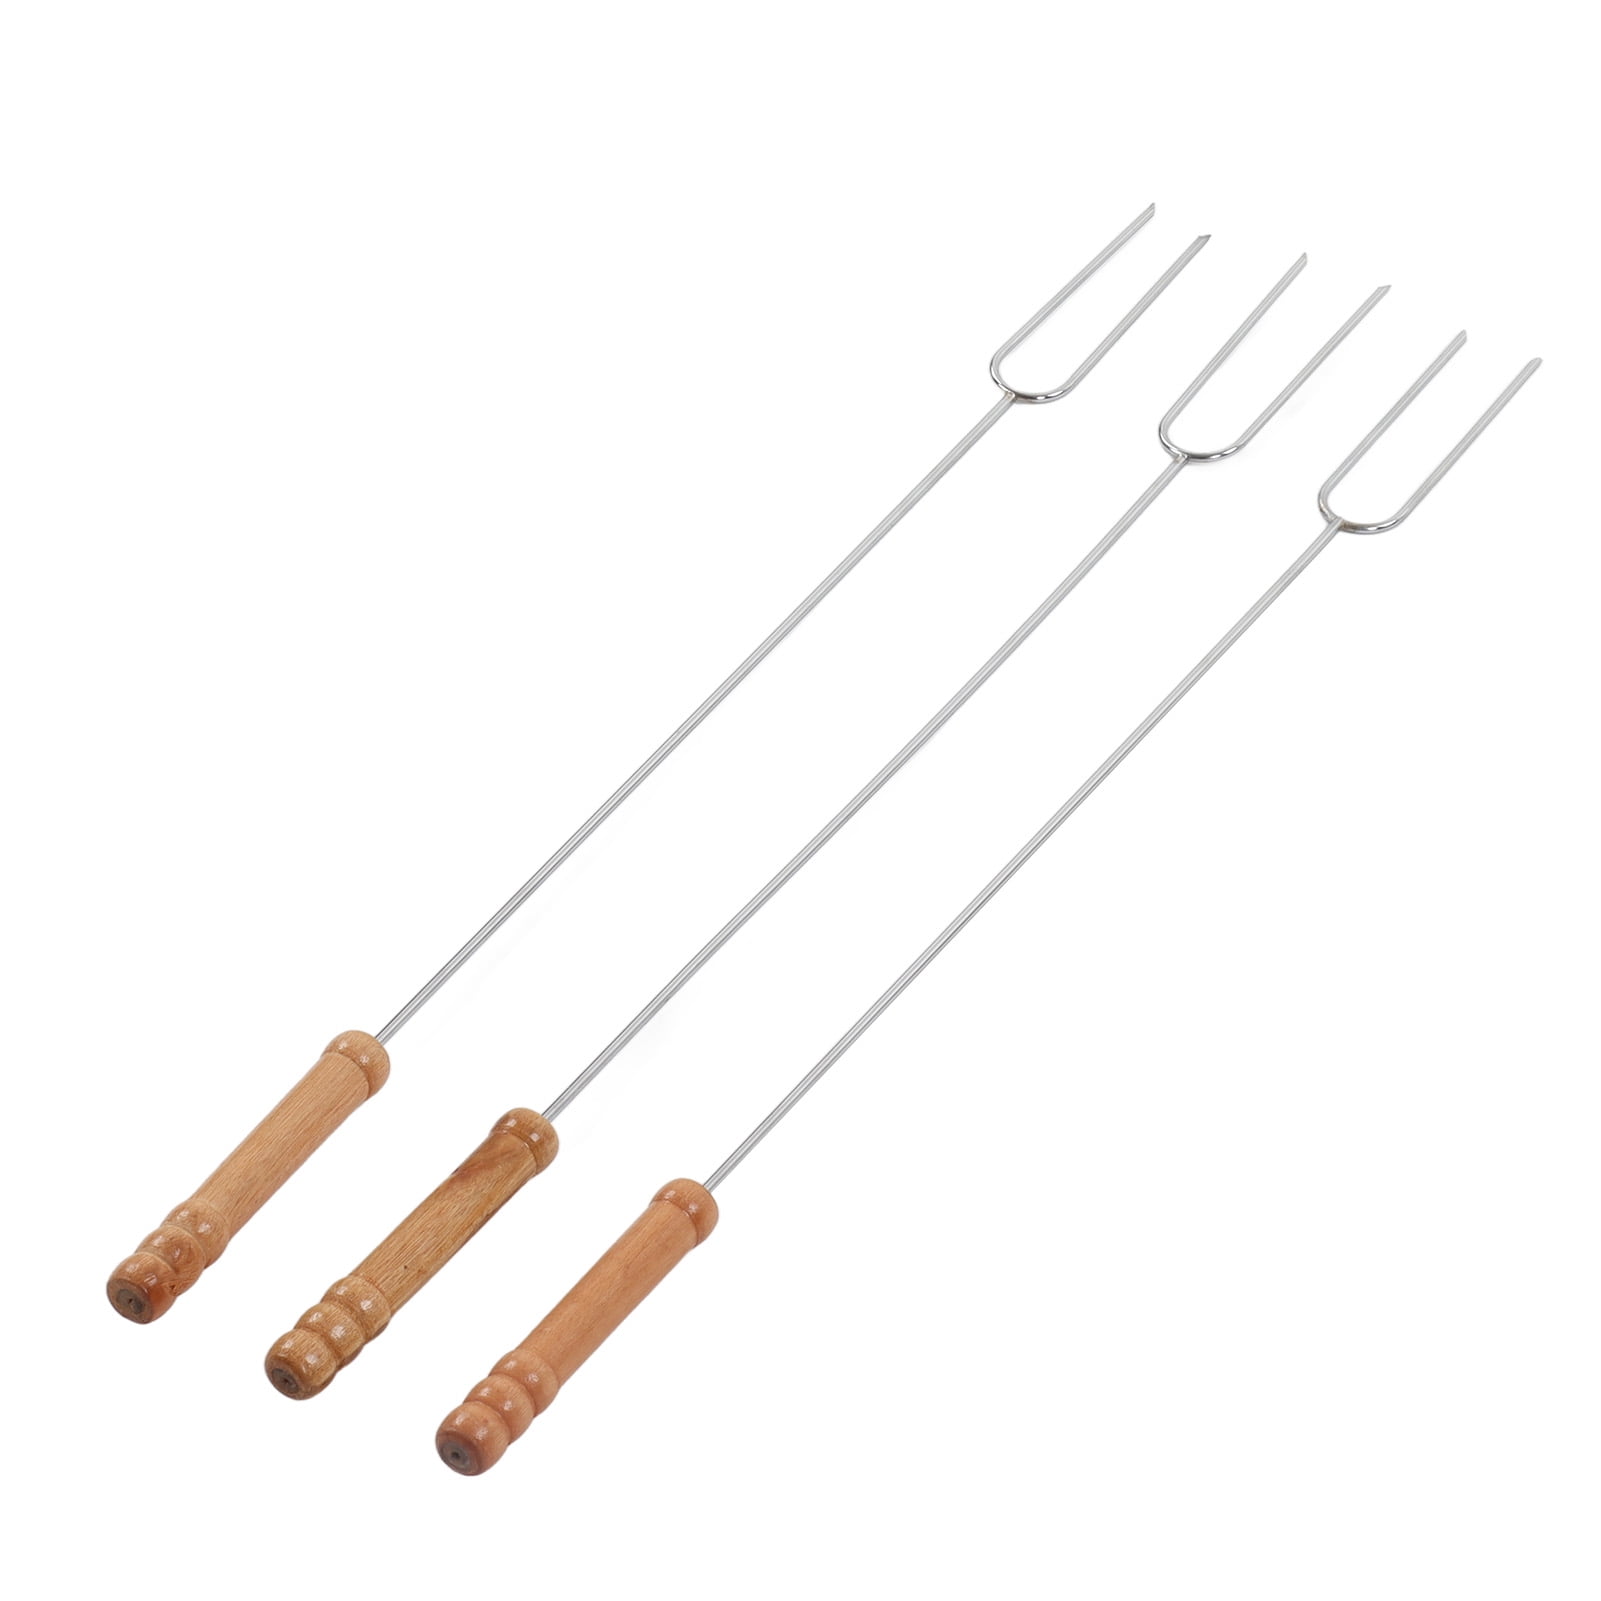 Hot Dog Fork, 3Pcs Lightweight Smore Sticks For Camping - Walmart.com